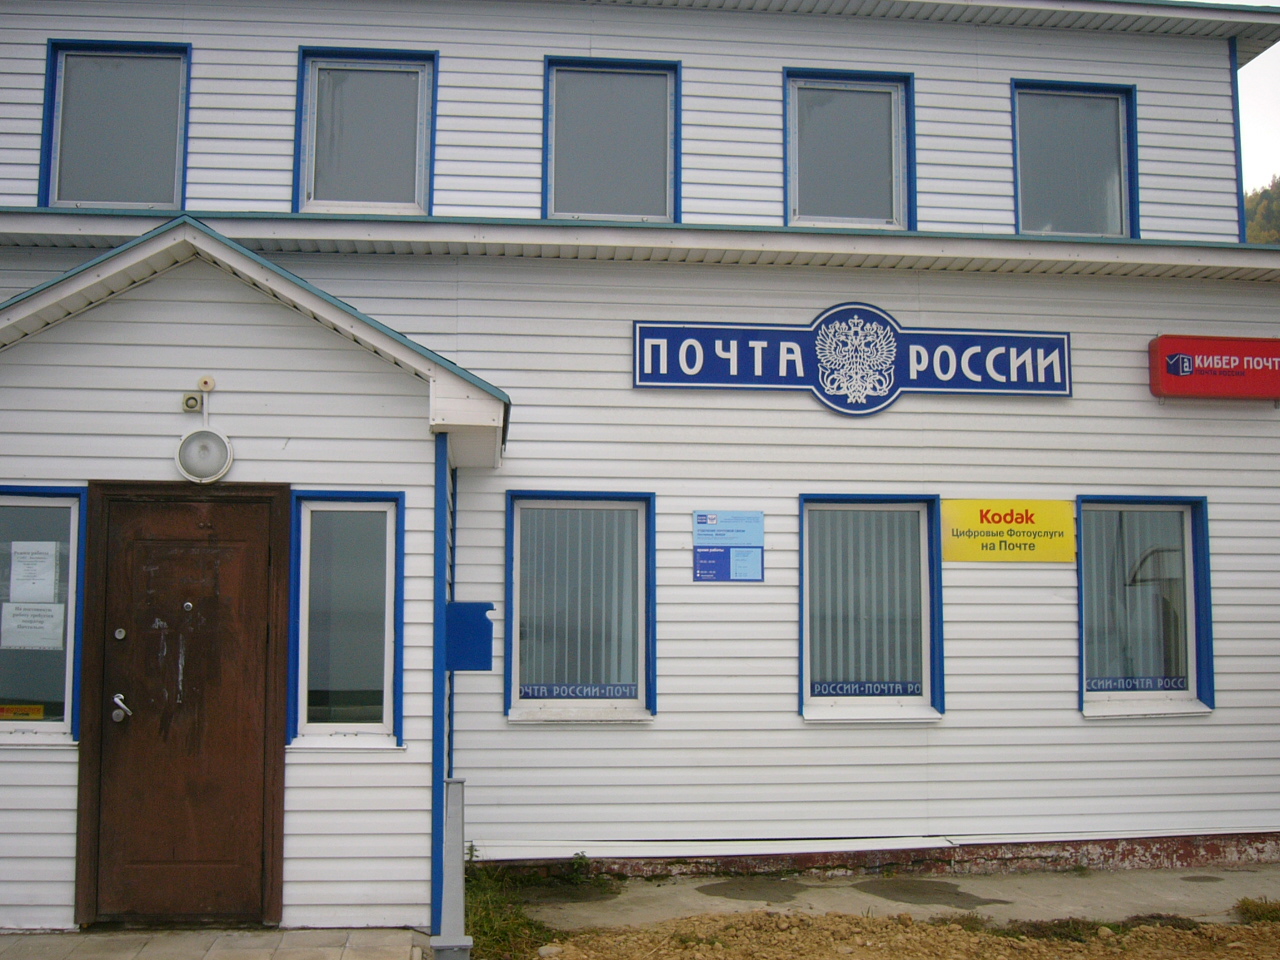 ВХОД, отделение почтовой связи 664520, Иркутская обл., Иркутский р-он, Листвянка